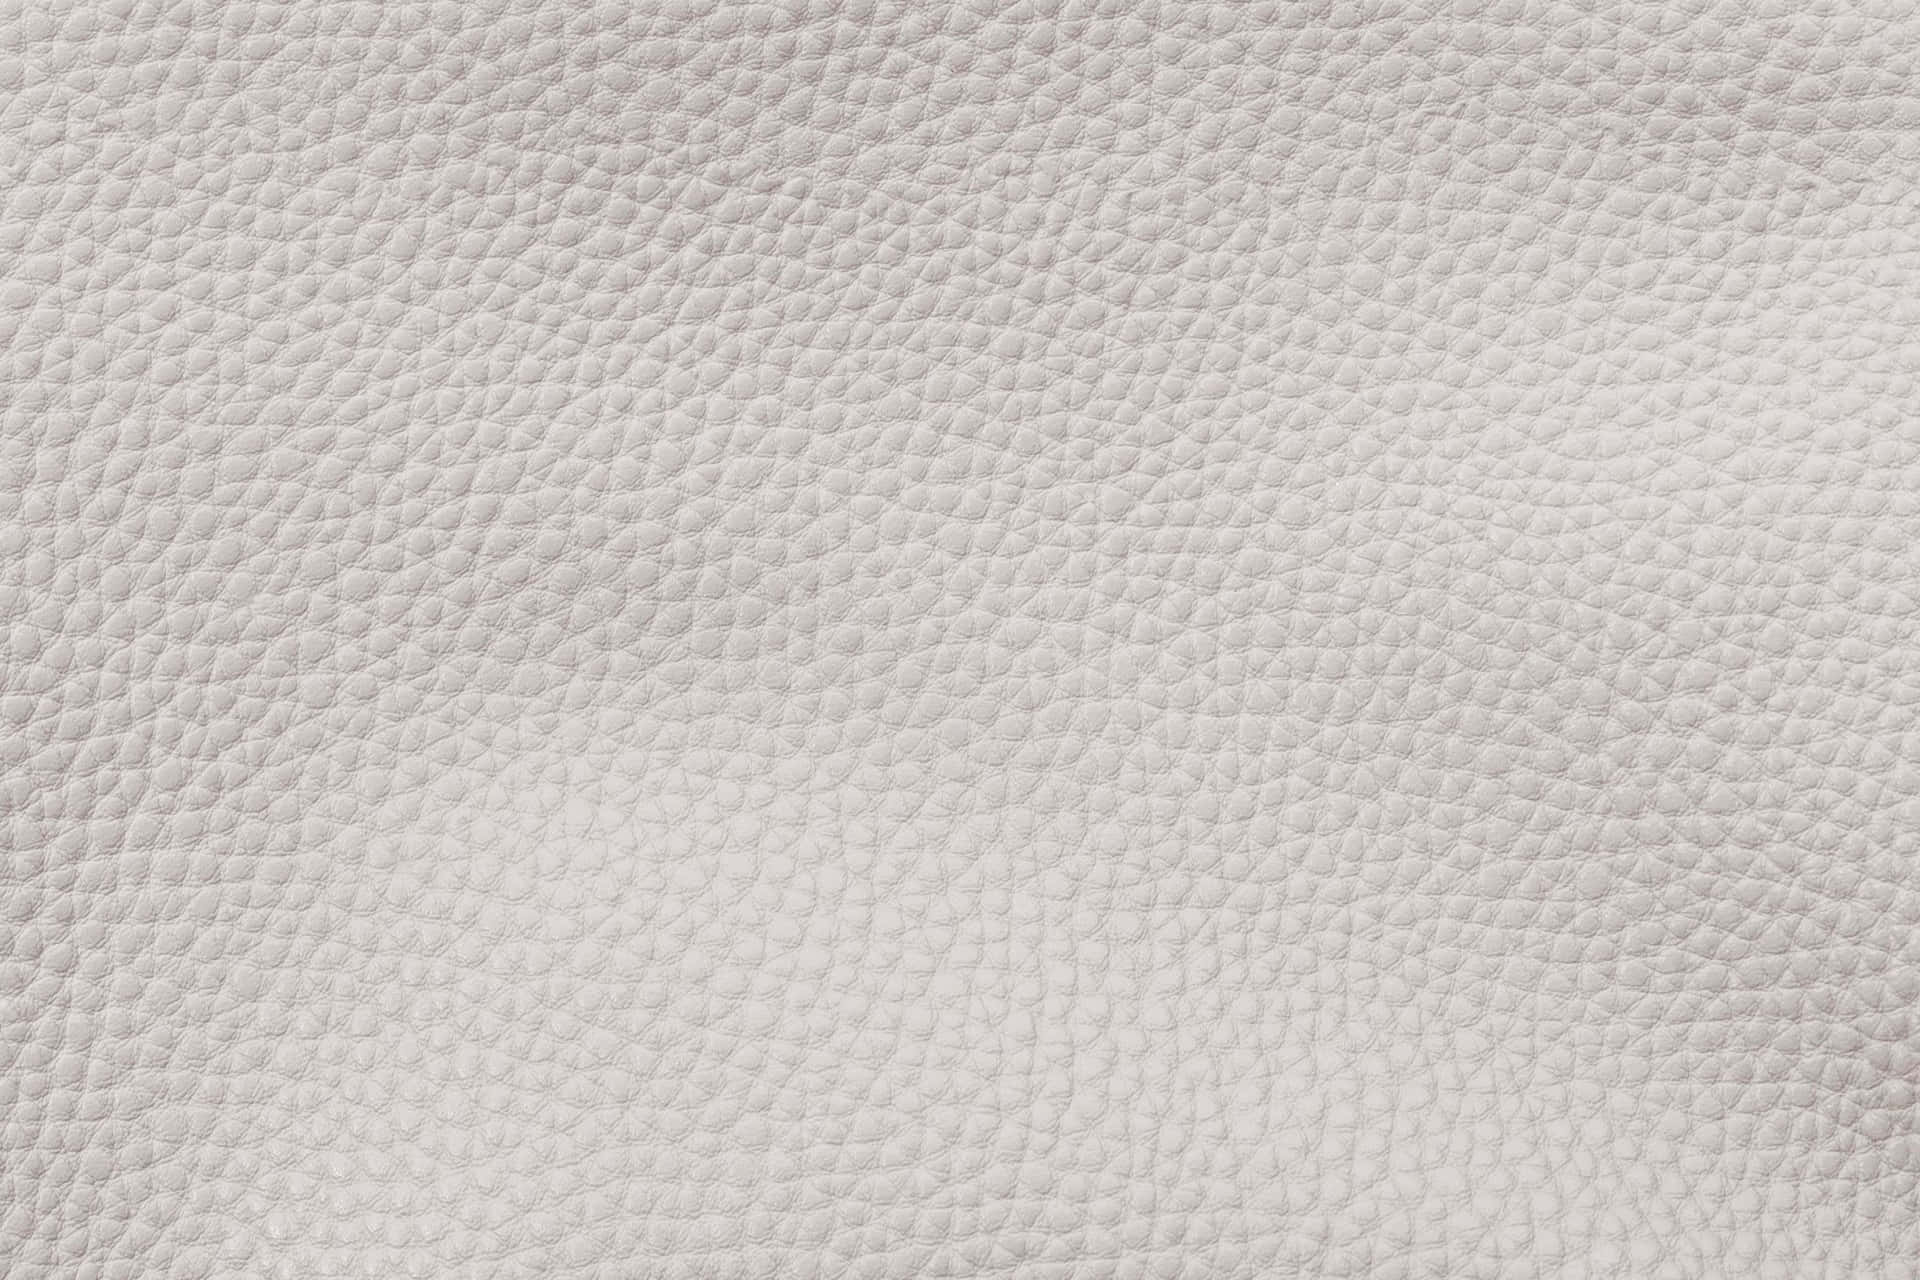 Læder Texture 2000 X 1333 Wallpaper